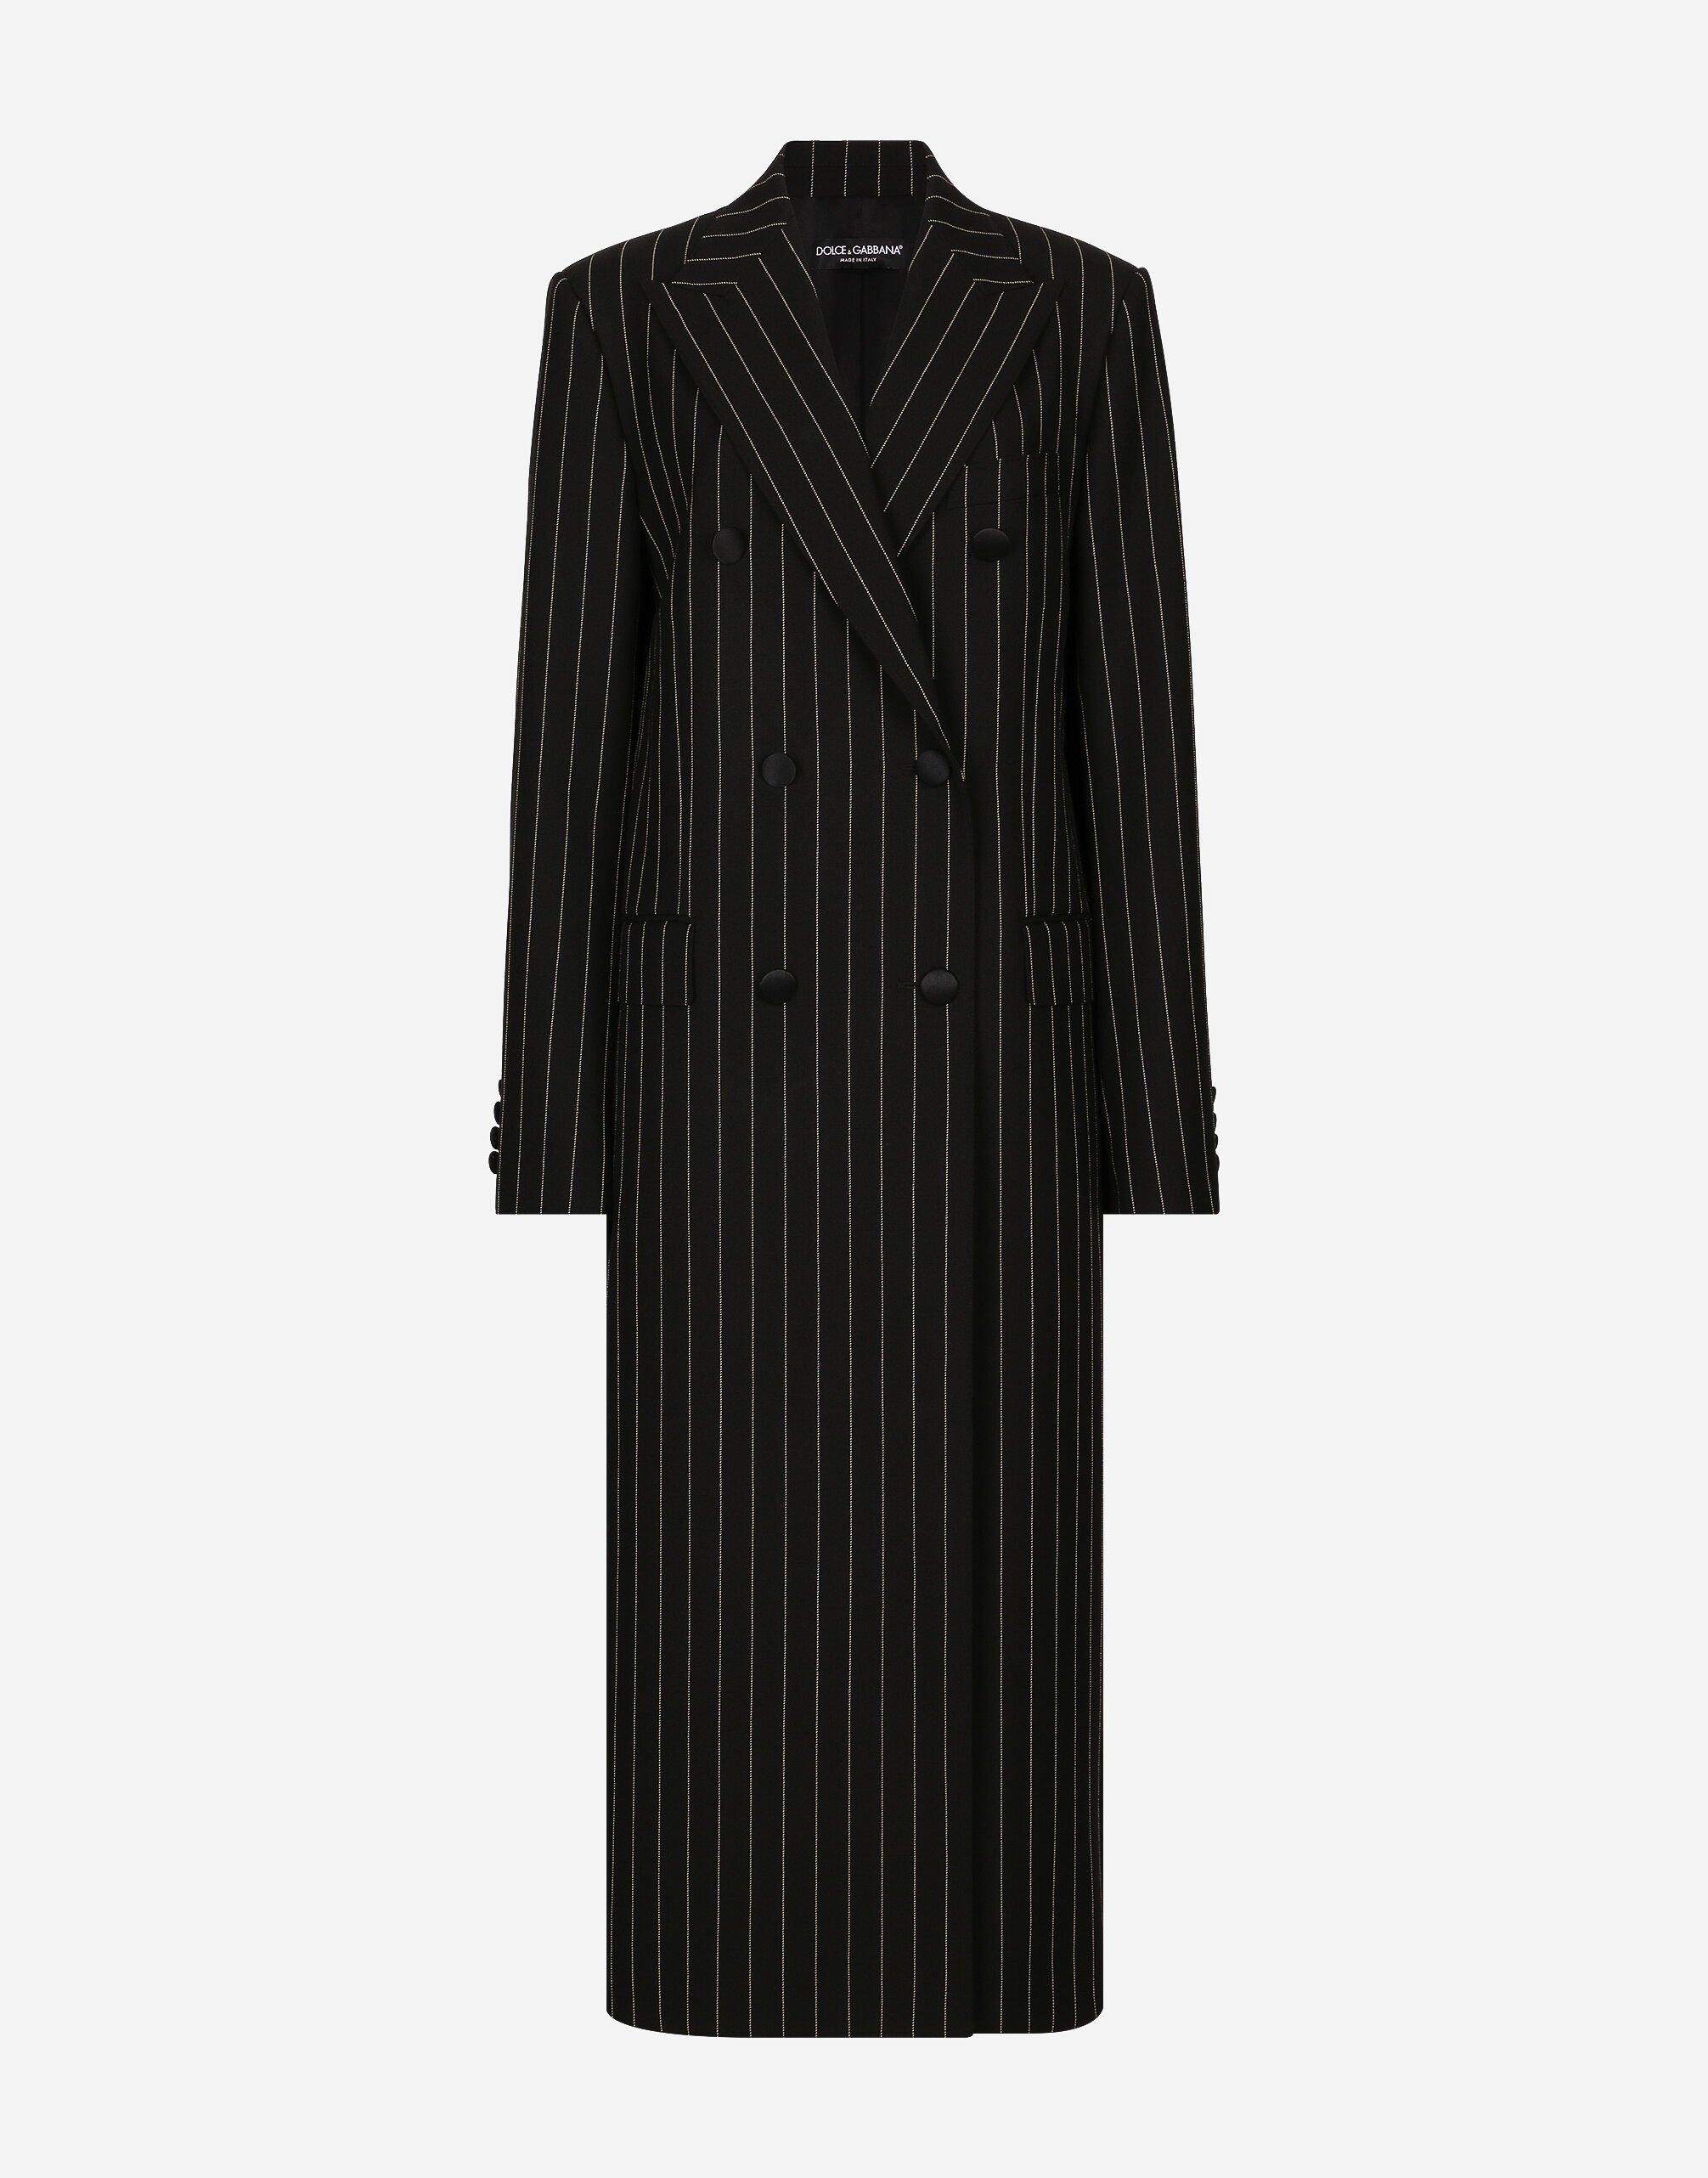 Dolce & Gabbana Abrigo de botonadura doble en paño de lana con rayas diplomáticas Negro F0D1OTFUMG9